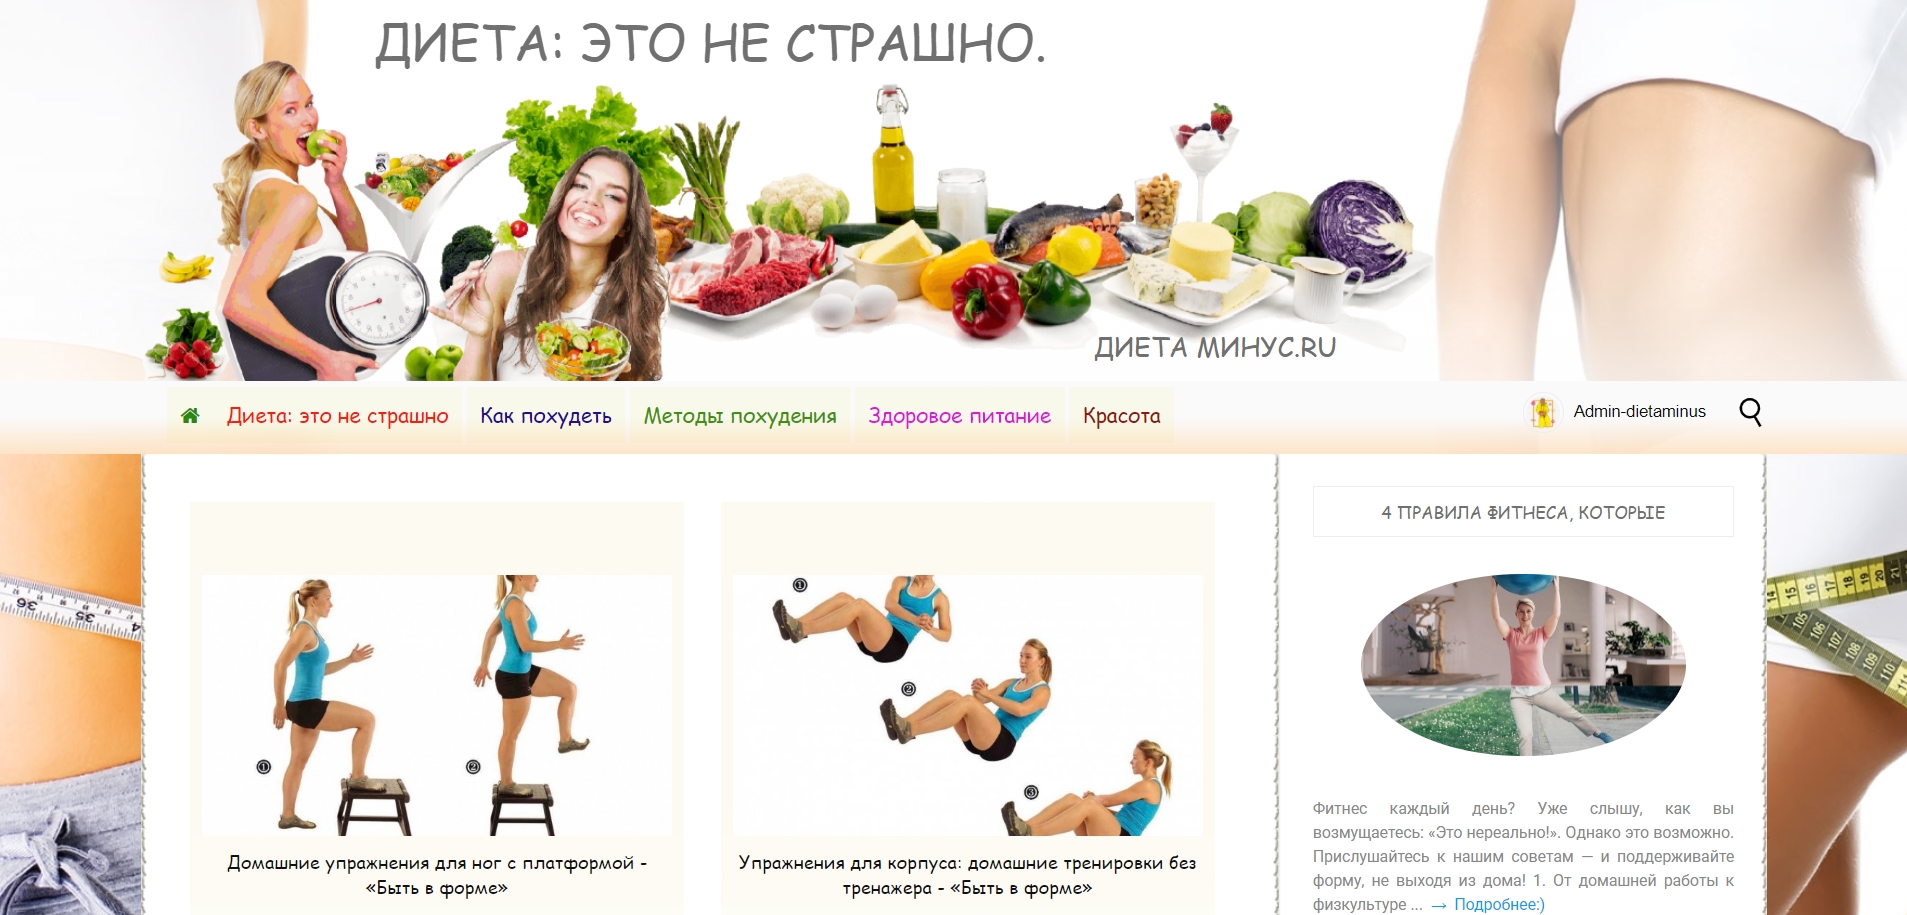 dietaminus.ru - ����� �����.